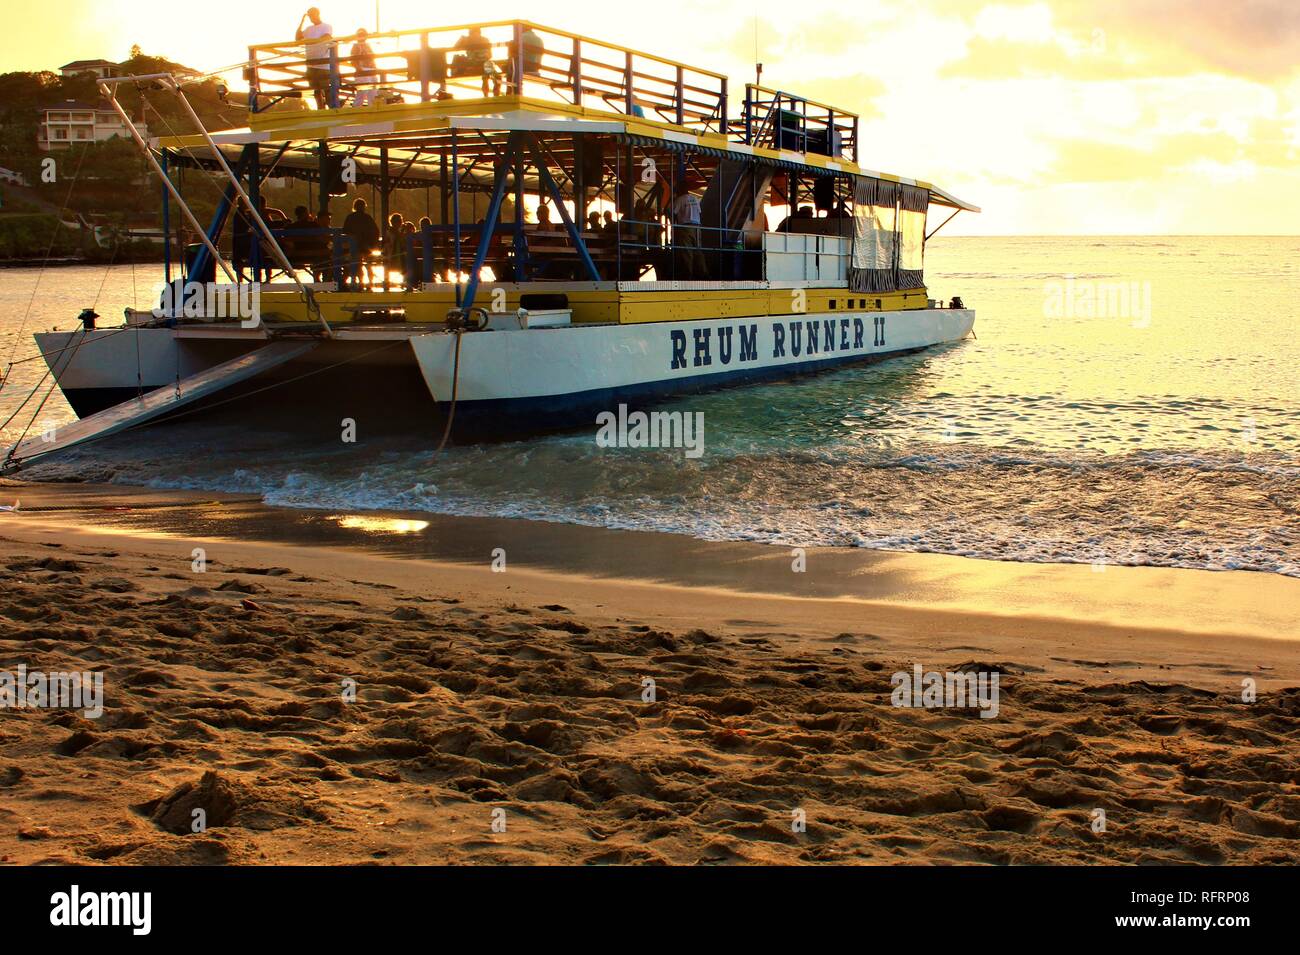 Grenada, Karibik - 23. Februar 2018: Die lokale Rum Runner Party Boot am Morne Rouge Strand angedockt warten auf die Touristen an Bord zurückzukehren. Stockfoto